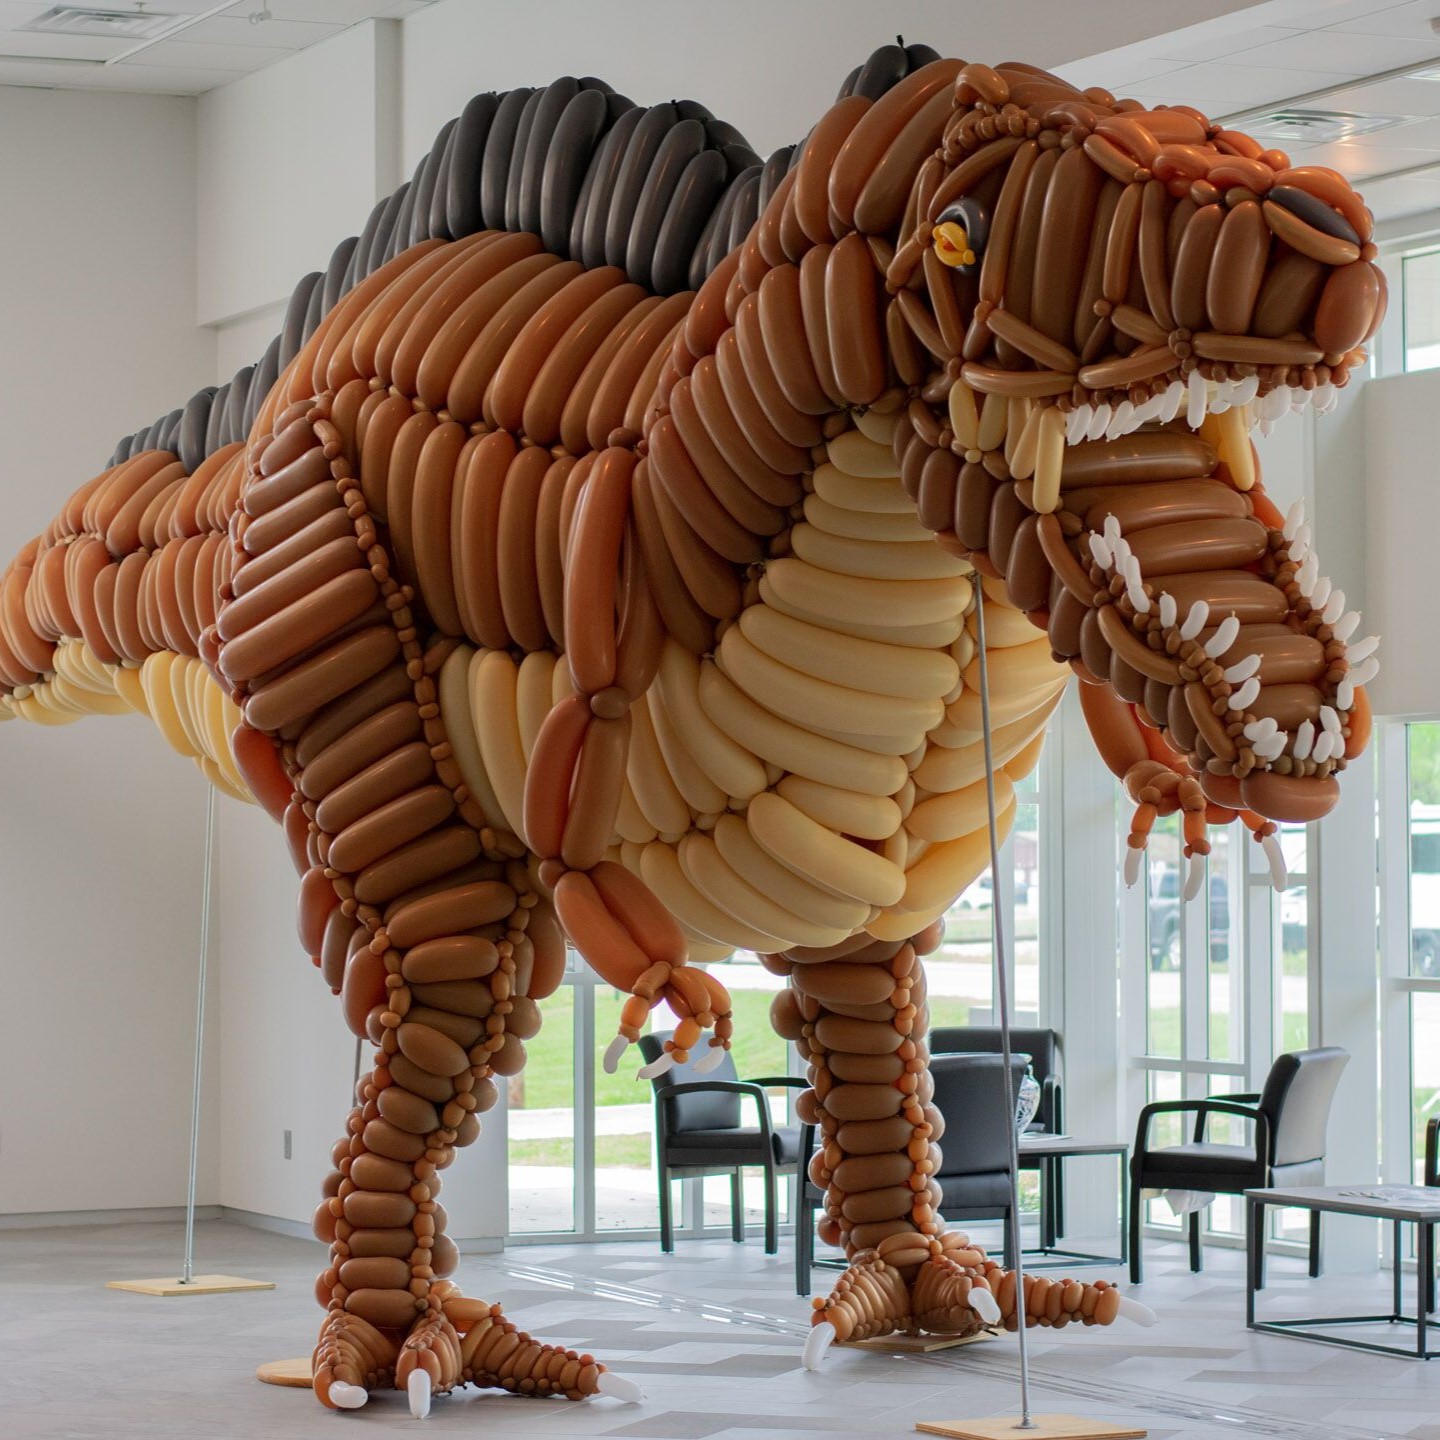 huge dinosaur balloon sculpture